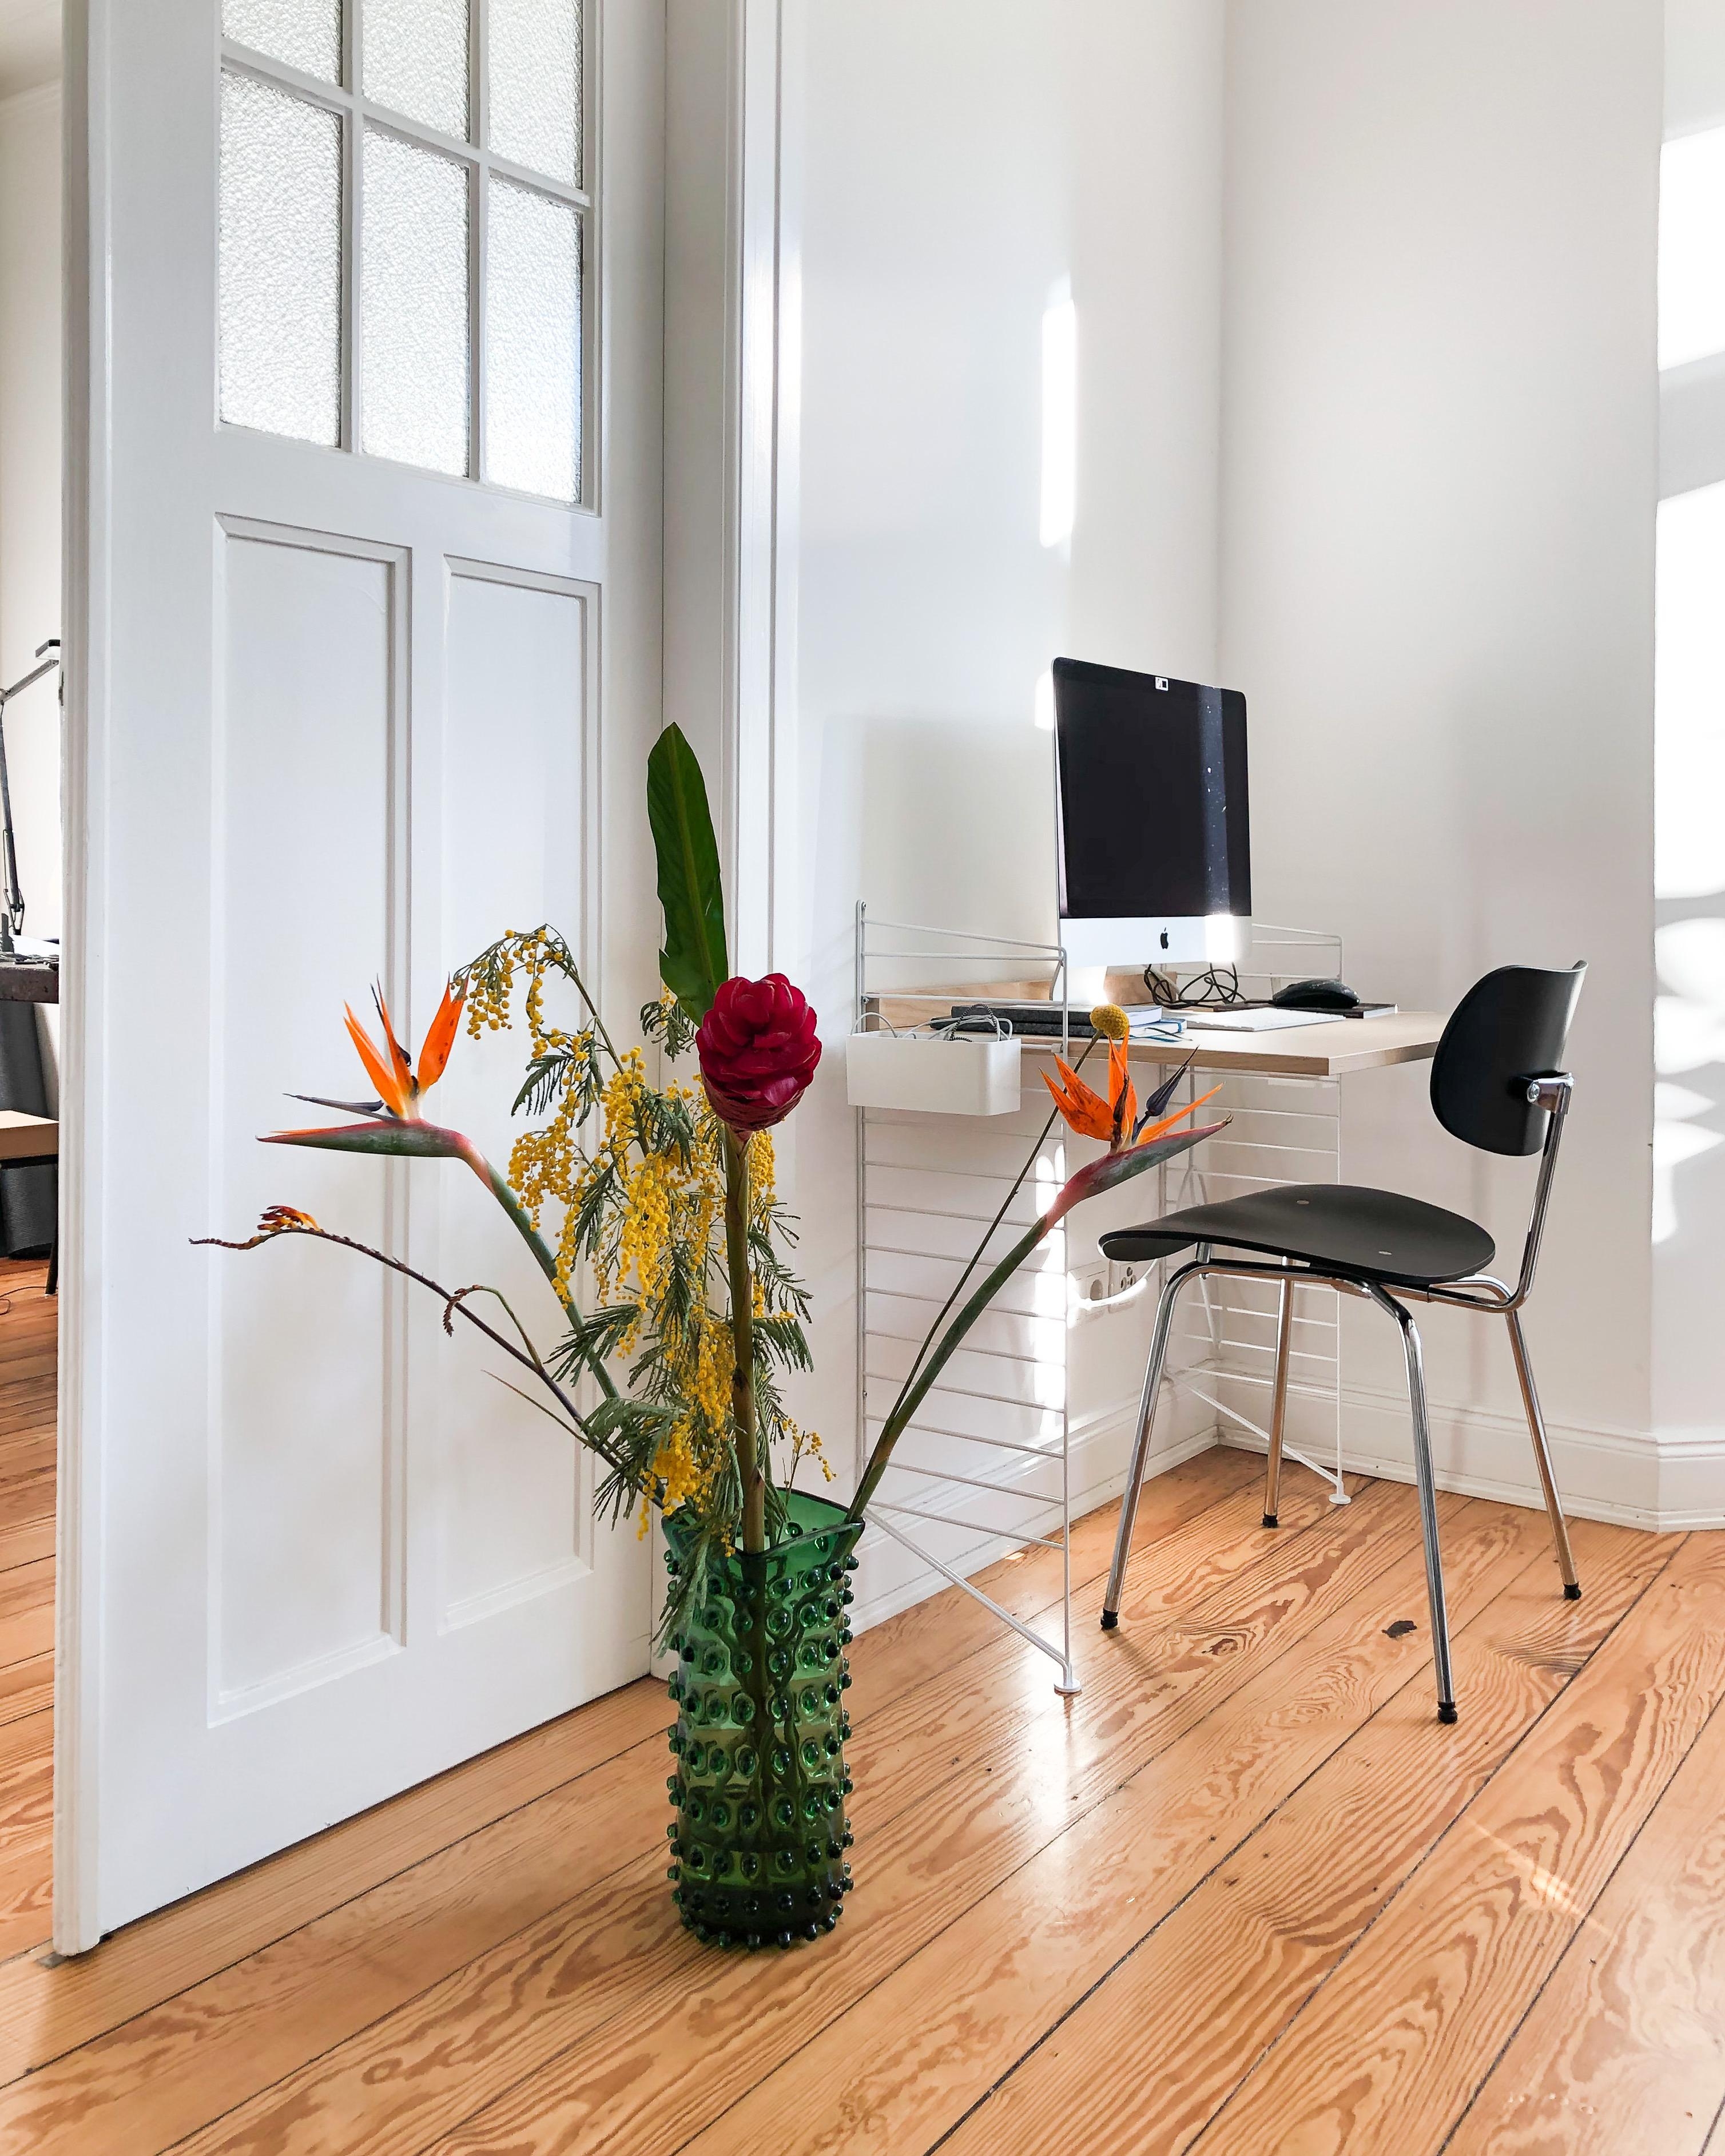 #frühlingserwachen #freshflowers #wohnzimmer #couchstyle #vase #bodenvase #designklassiker